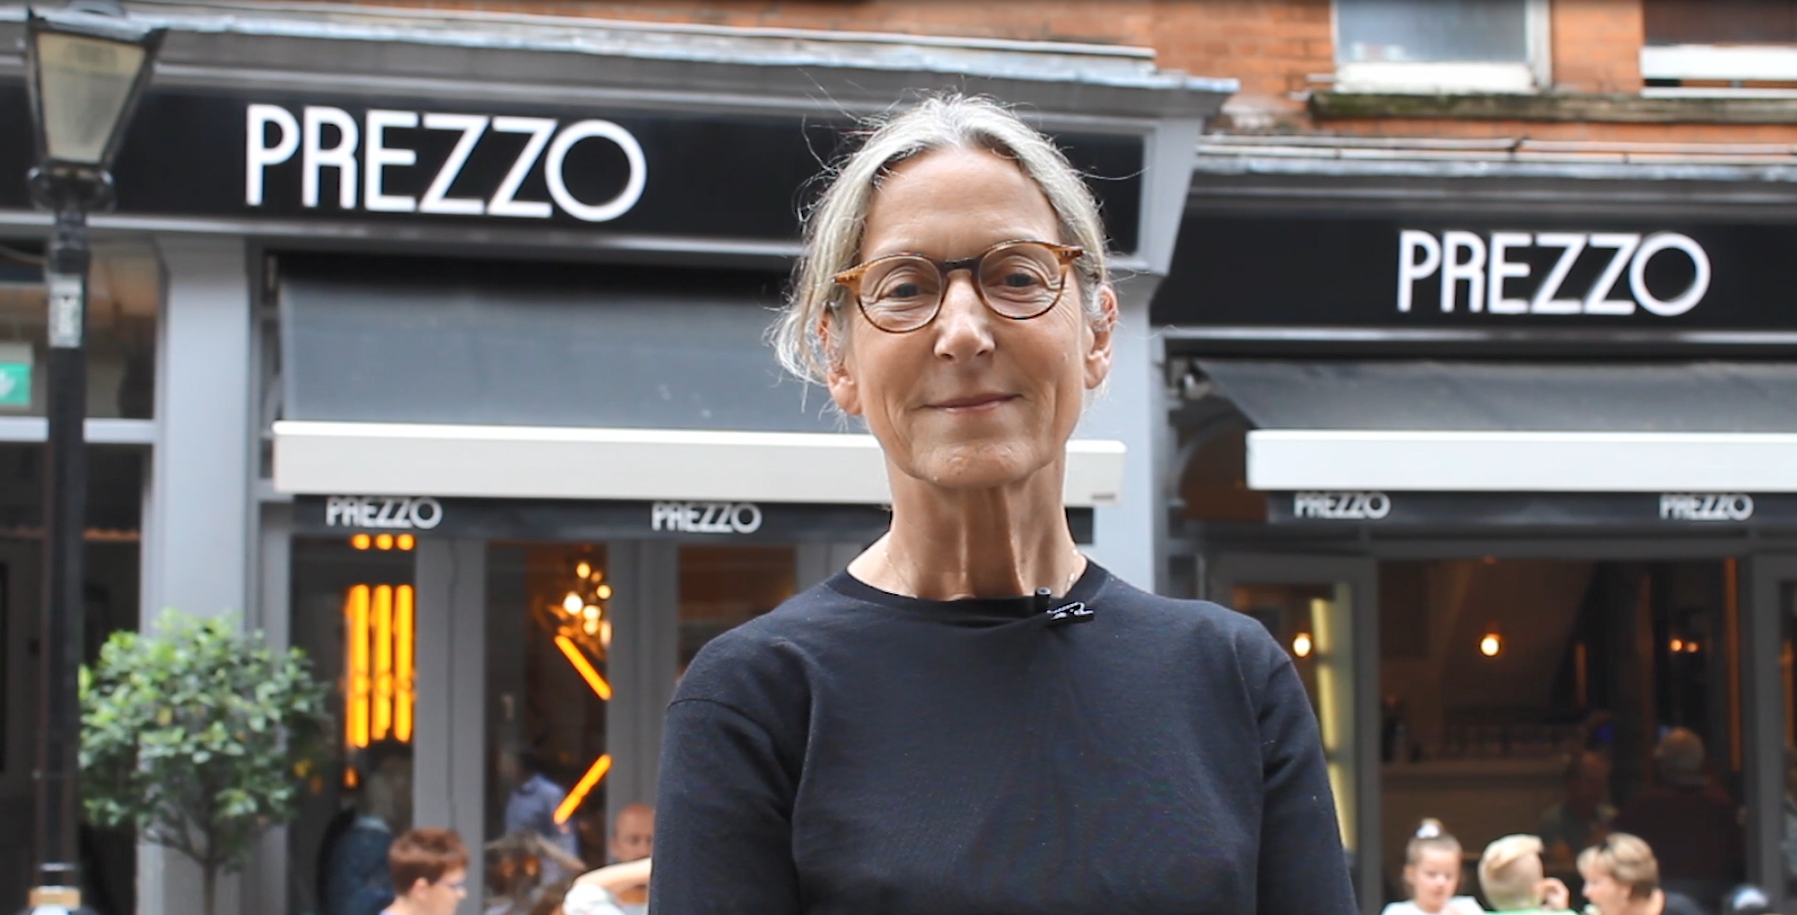 Prezzo's Karen Jones to join Deliveroo’s board as non-executive director